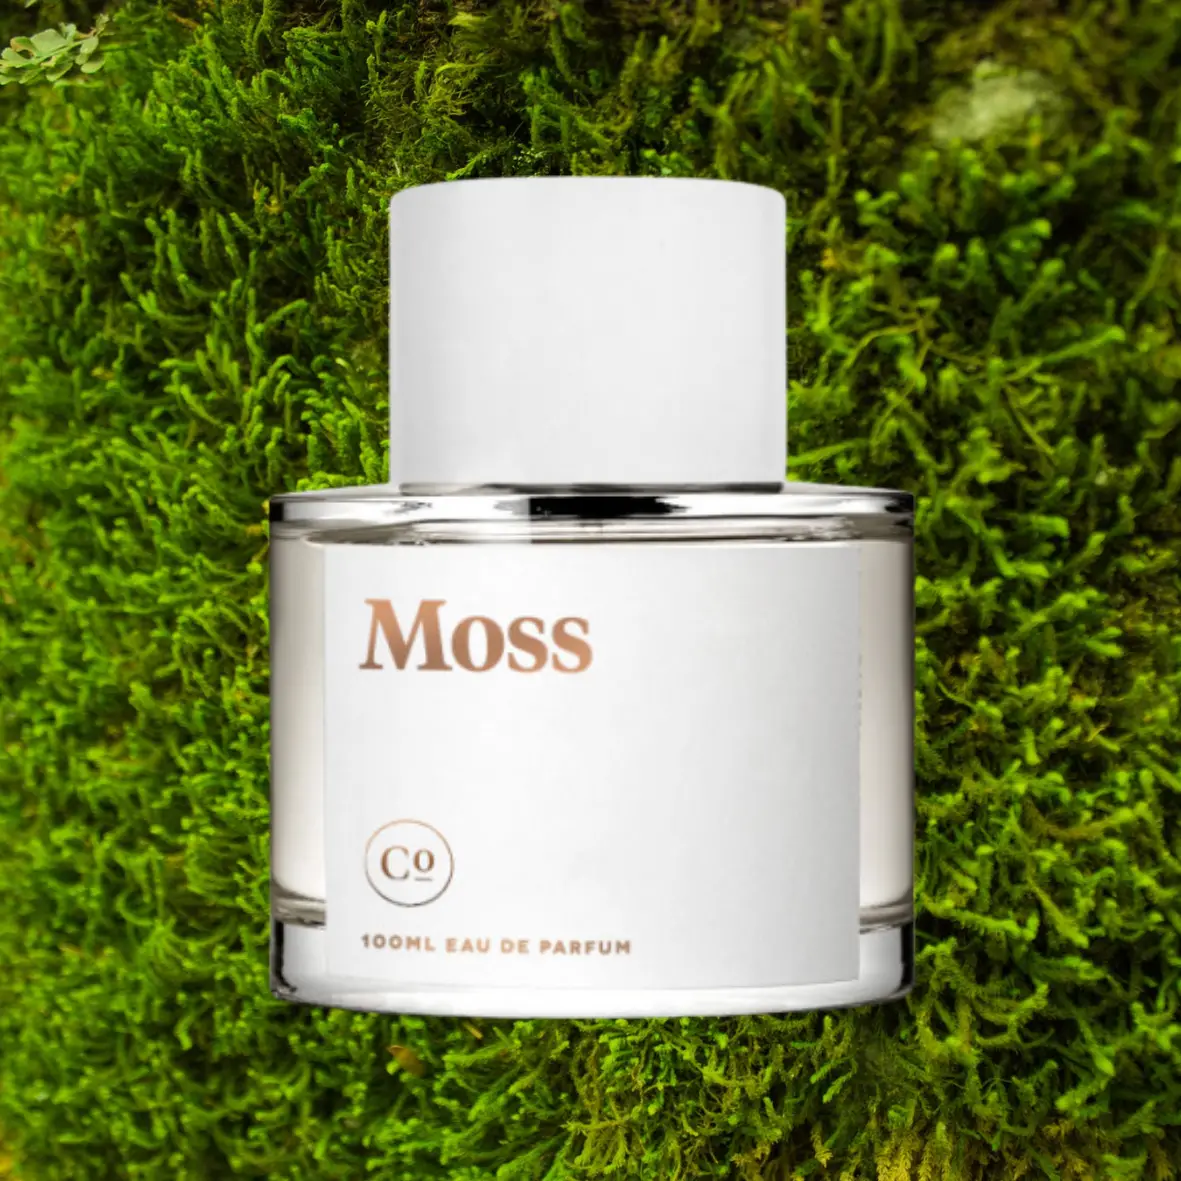 สินค้าโภคภัณฑ์ Moss Best Green Perfumes